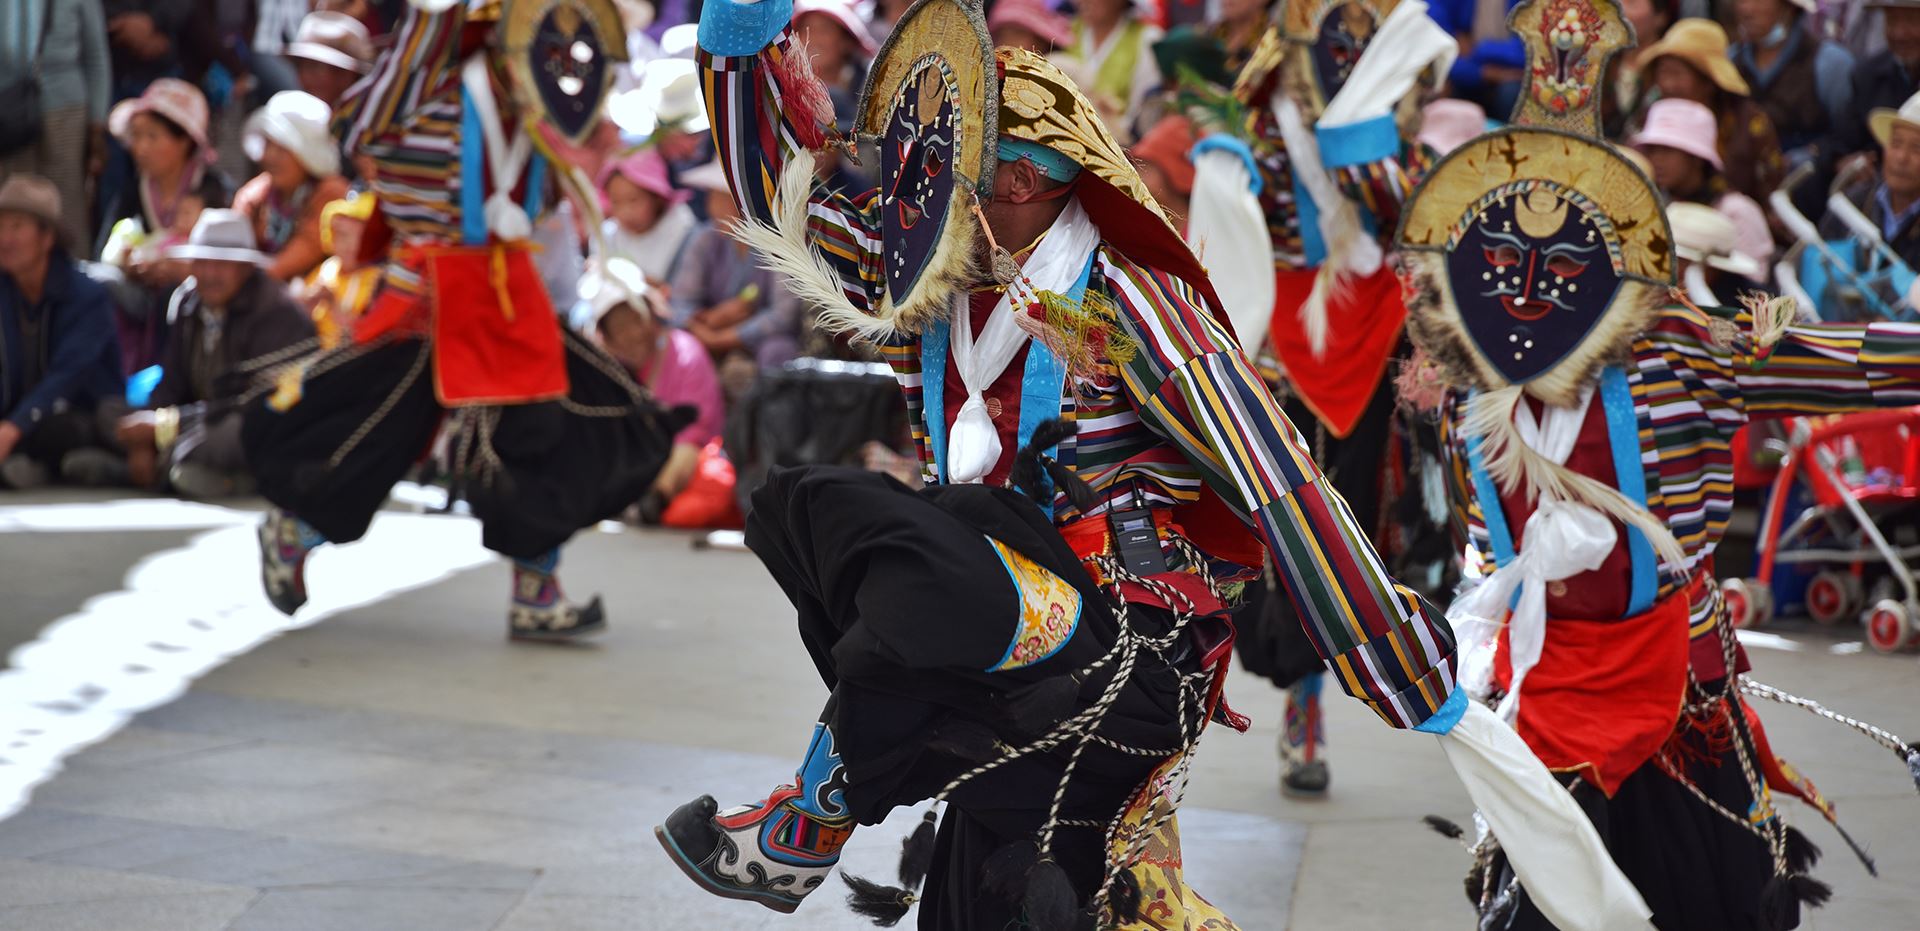 Viaggio del Tibet durante la Festa di Shoton a Lhasa e Festa dell'ippica a Naqu 2021